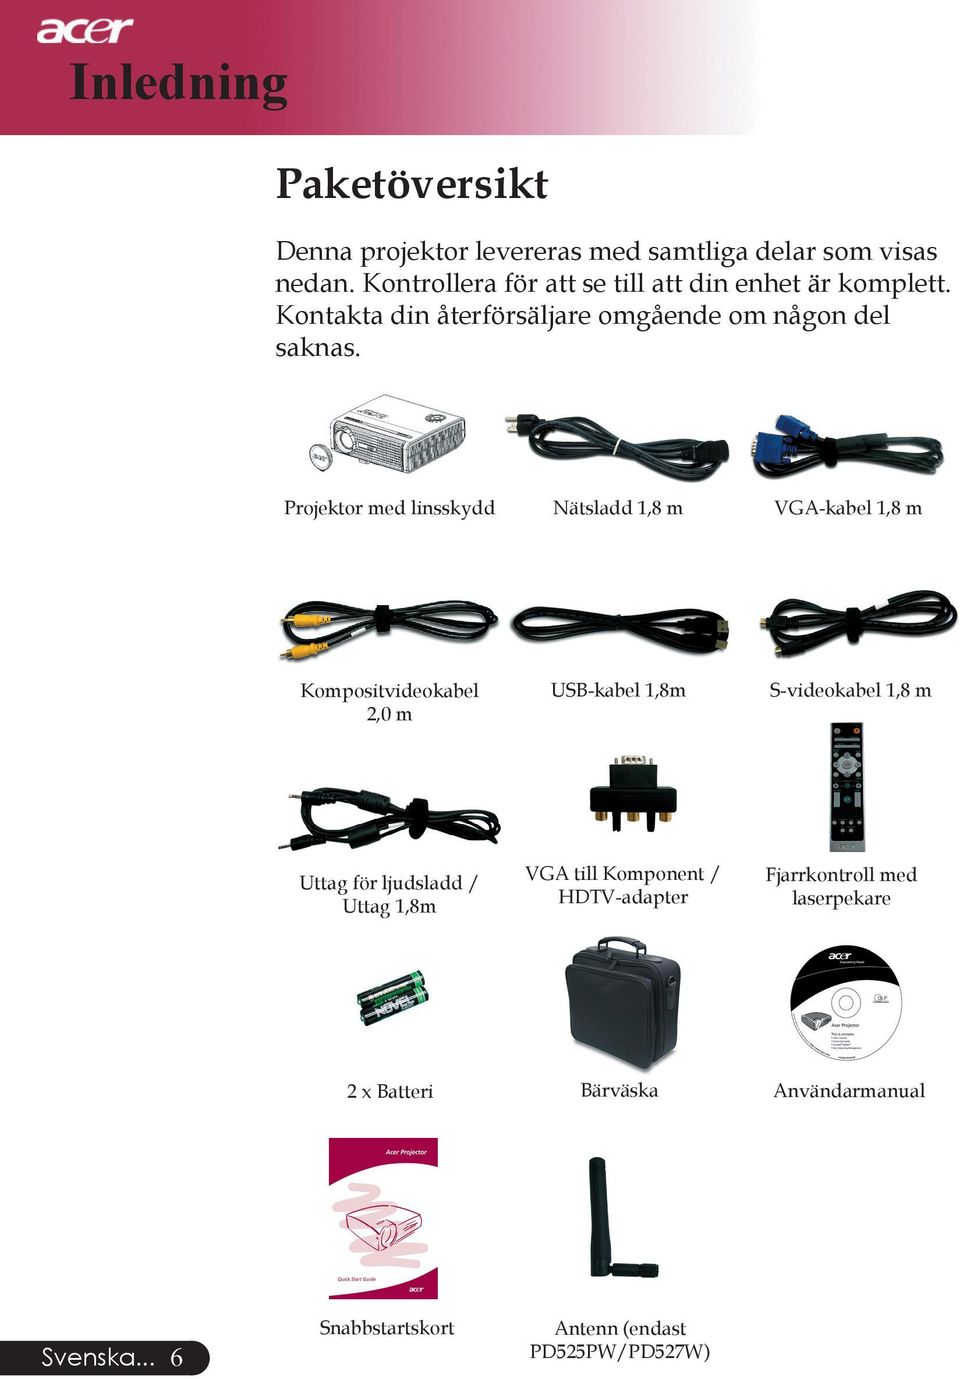 Projektor med linsskydd Nätsladd 1,8 m VGA-kabel 1,8 m Kompositvideokabel 2,0 m USB-kabel 1,8m S-videokabel 1,8 m Uttag för